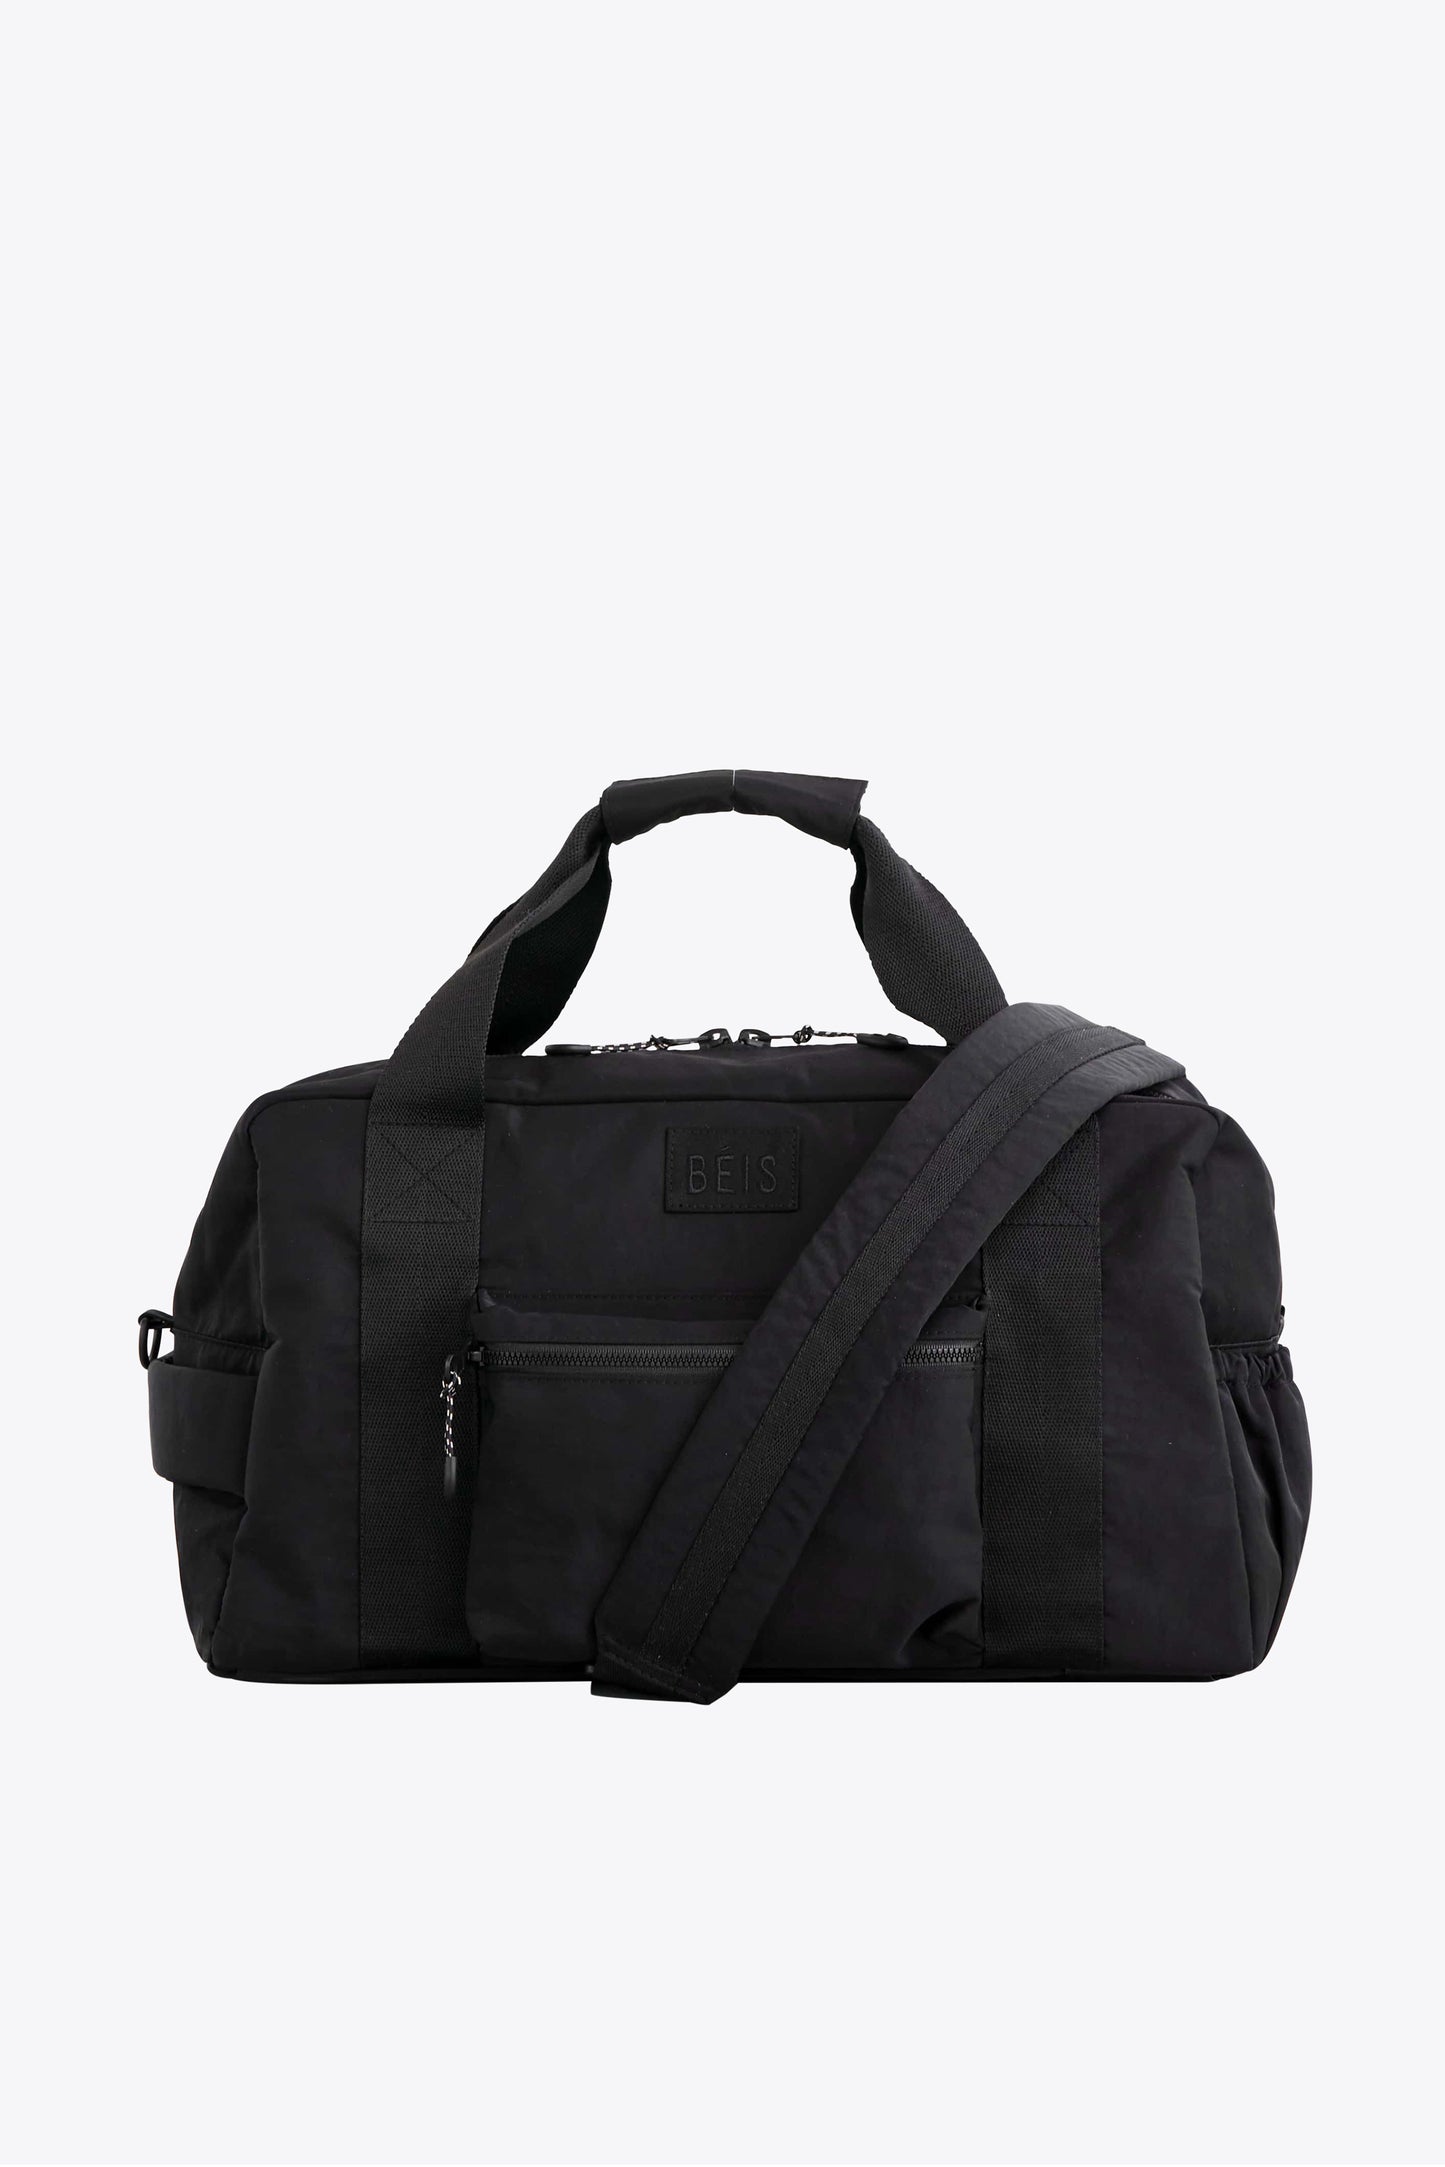 adjustable shoulder strap for bag Great Fine Useful Wide Duffle